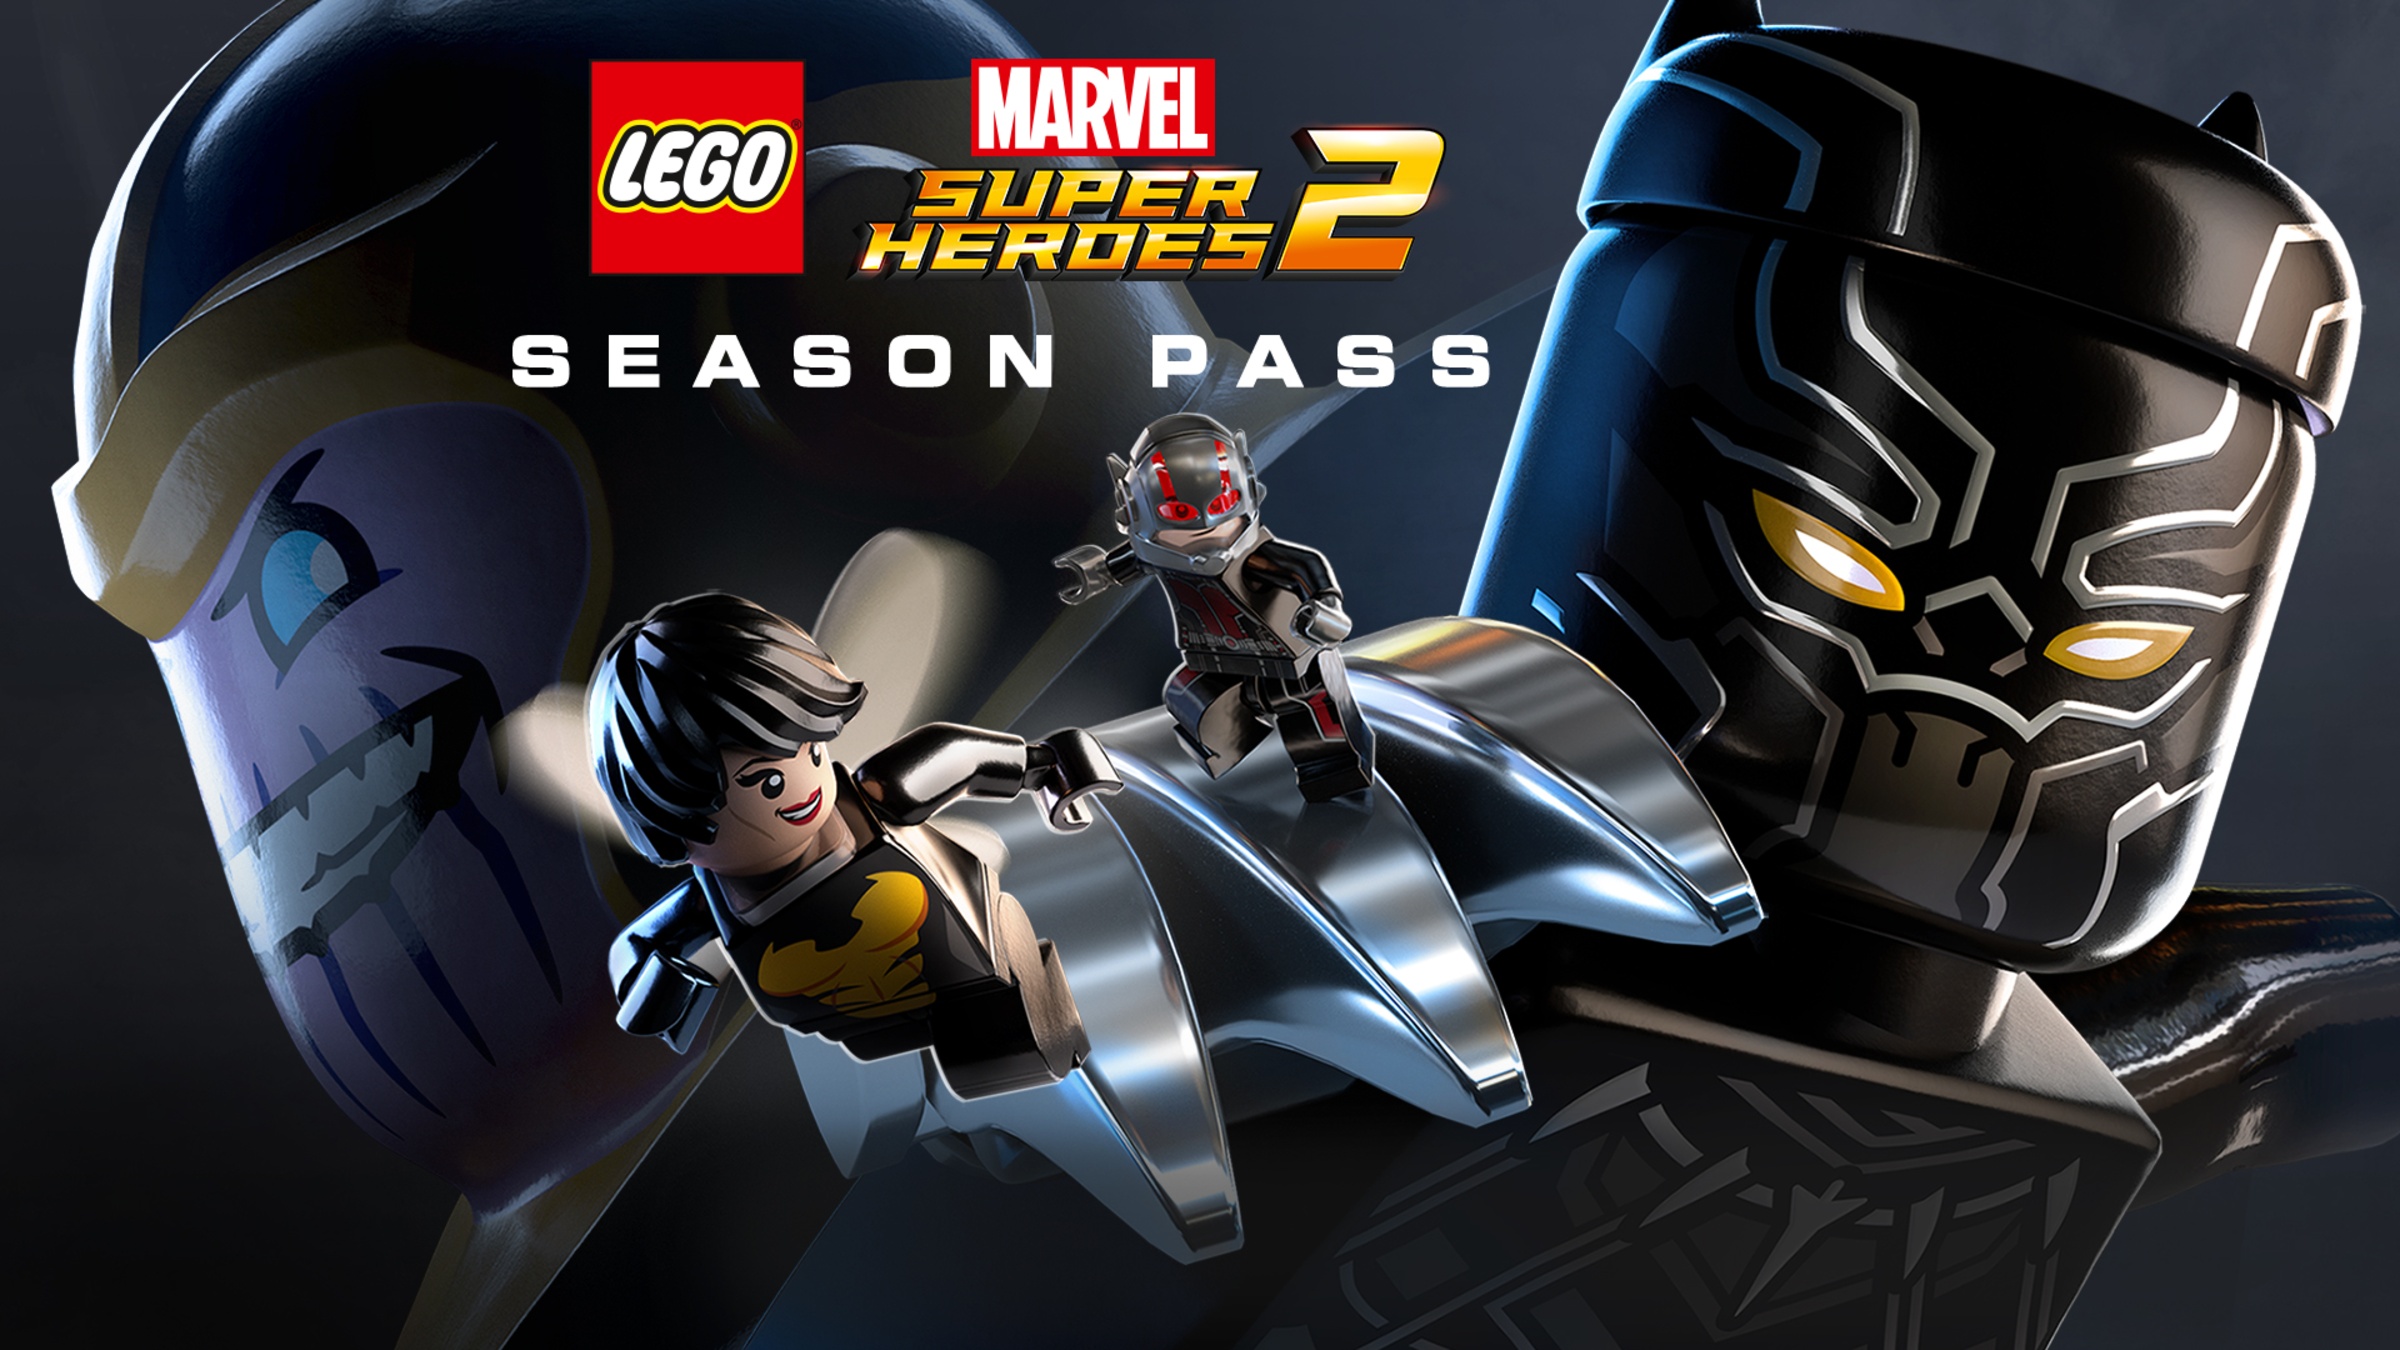 Joven aquí pollo LEGO® Marvel Super Heroes 2 Season Pass for Nintendo Switch - Nintendo  Official Site